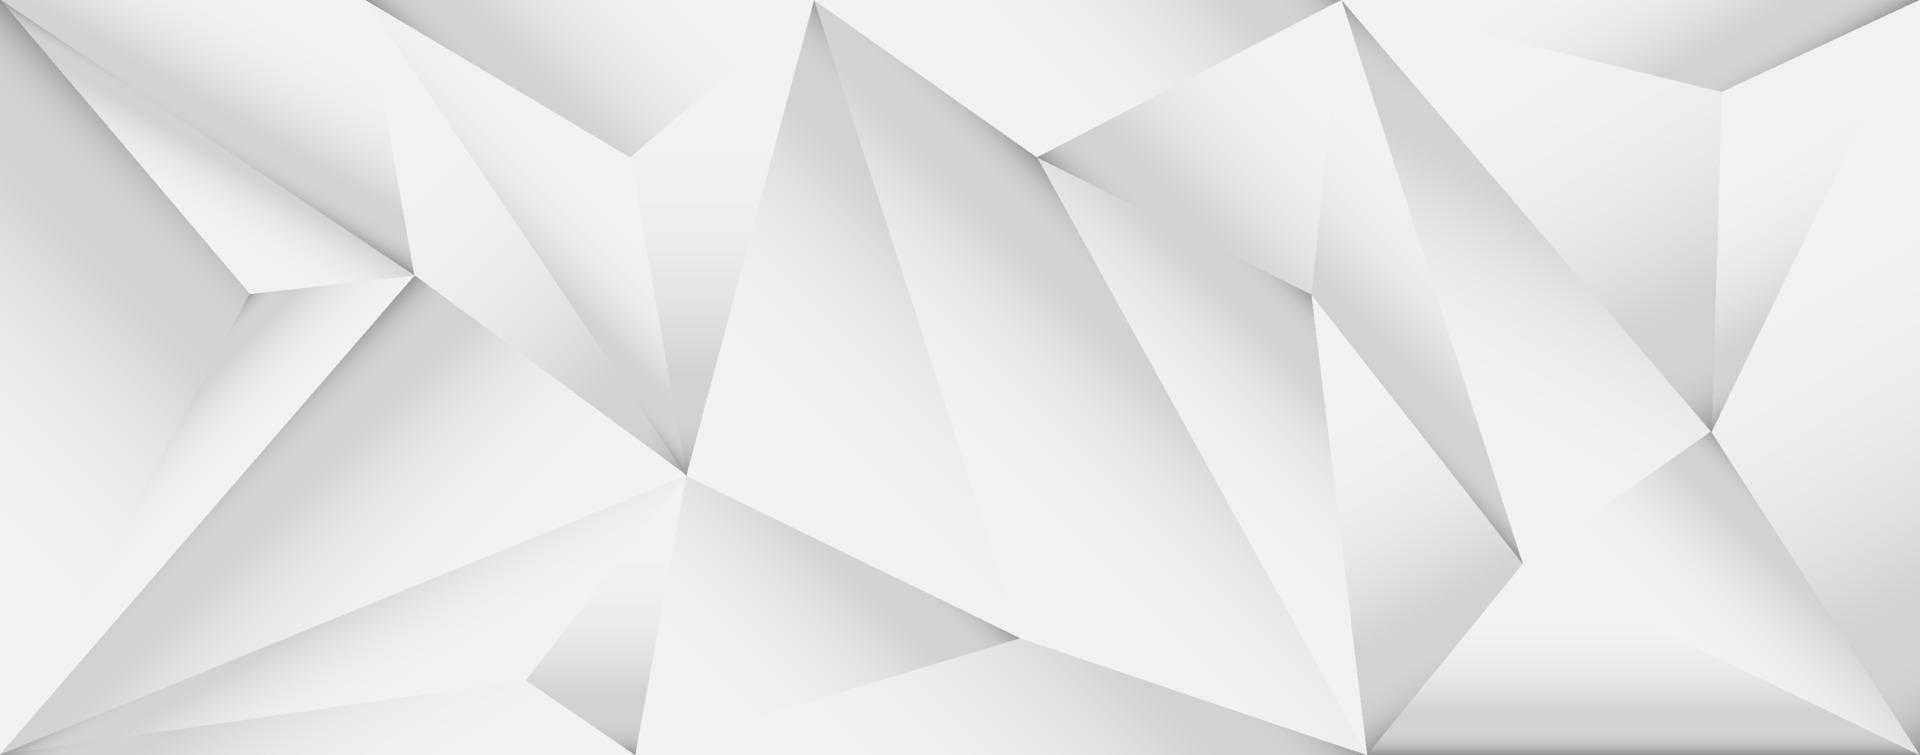 niedriges polygraues und weißes Hintergrunddesign mit geometrischen Dreiecken vektor